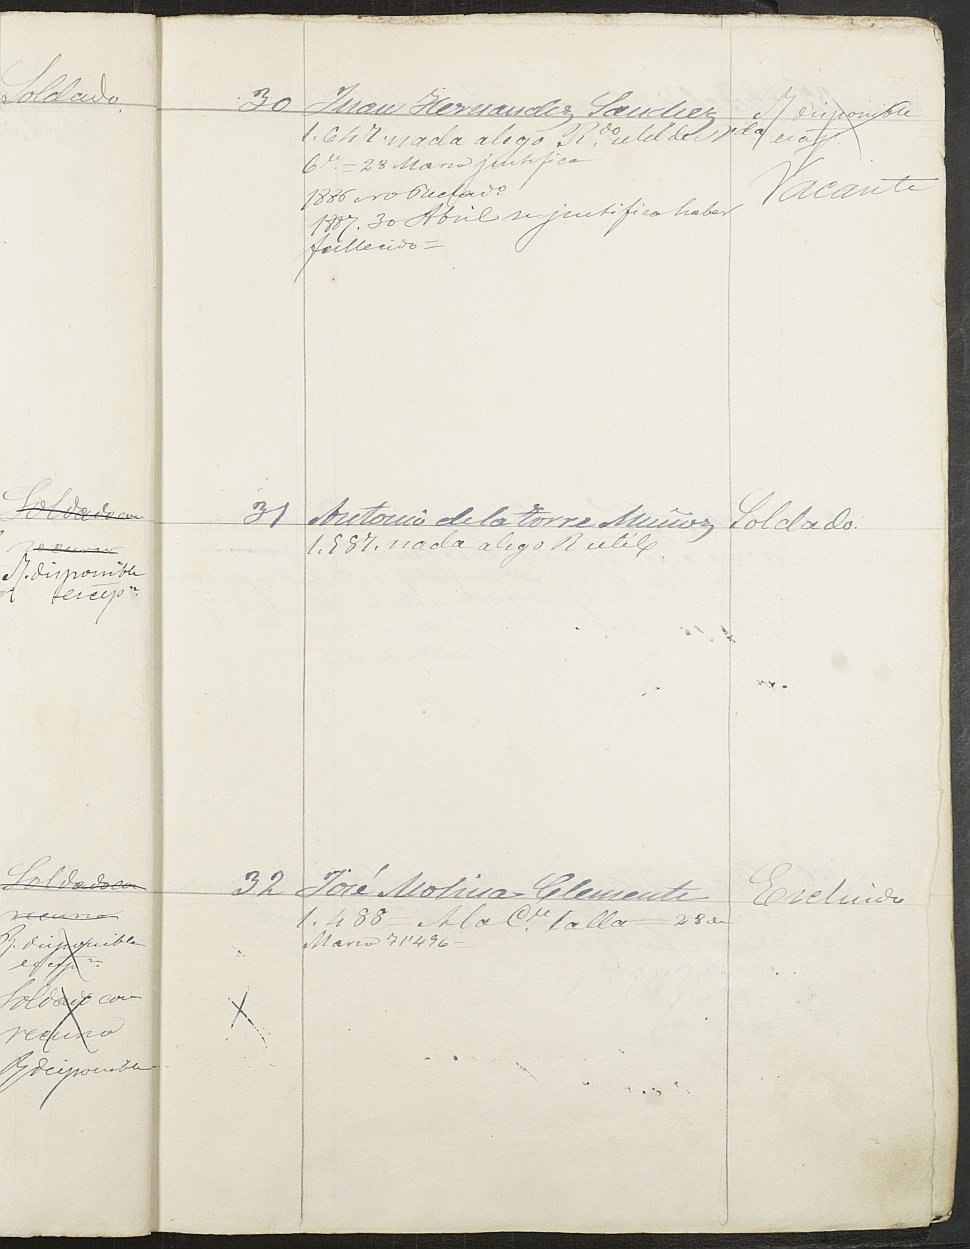 Relación de individuos declarados soldados e ingresados en Caja de la Sección 4ª del Ayuntamiento de Cartagena de 1885.